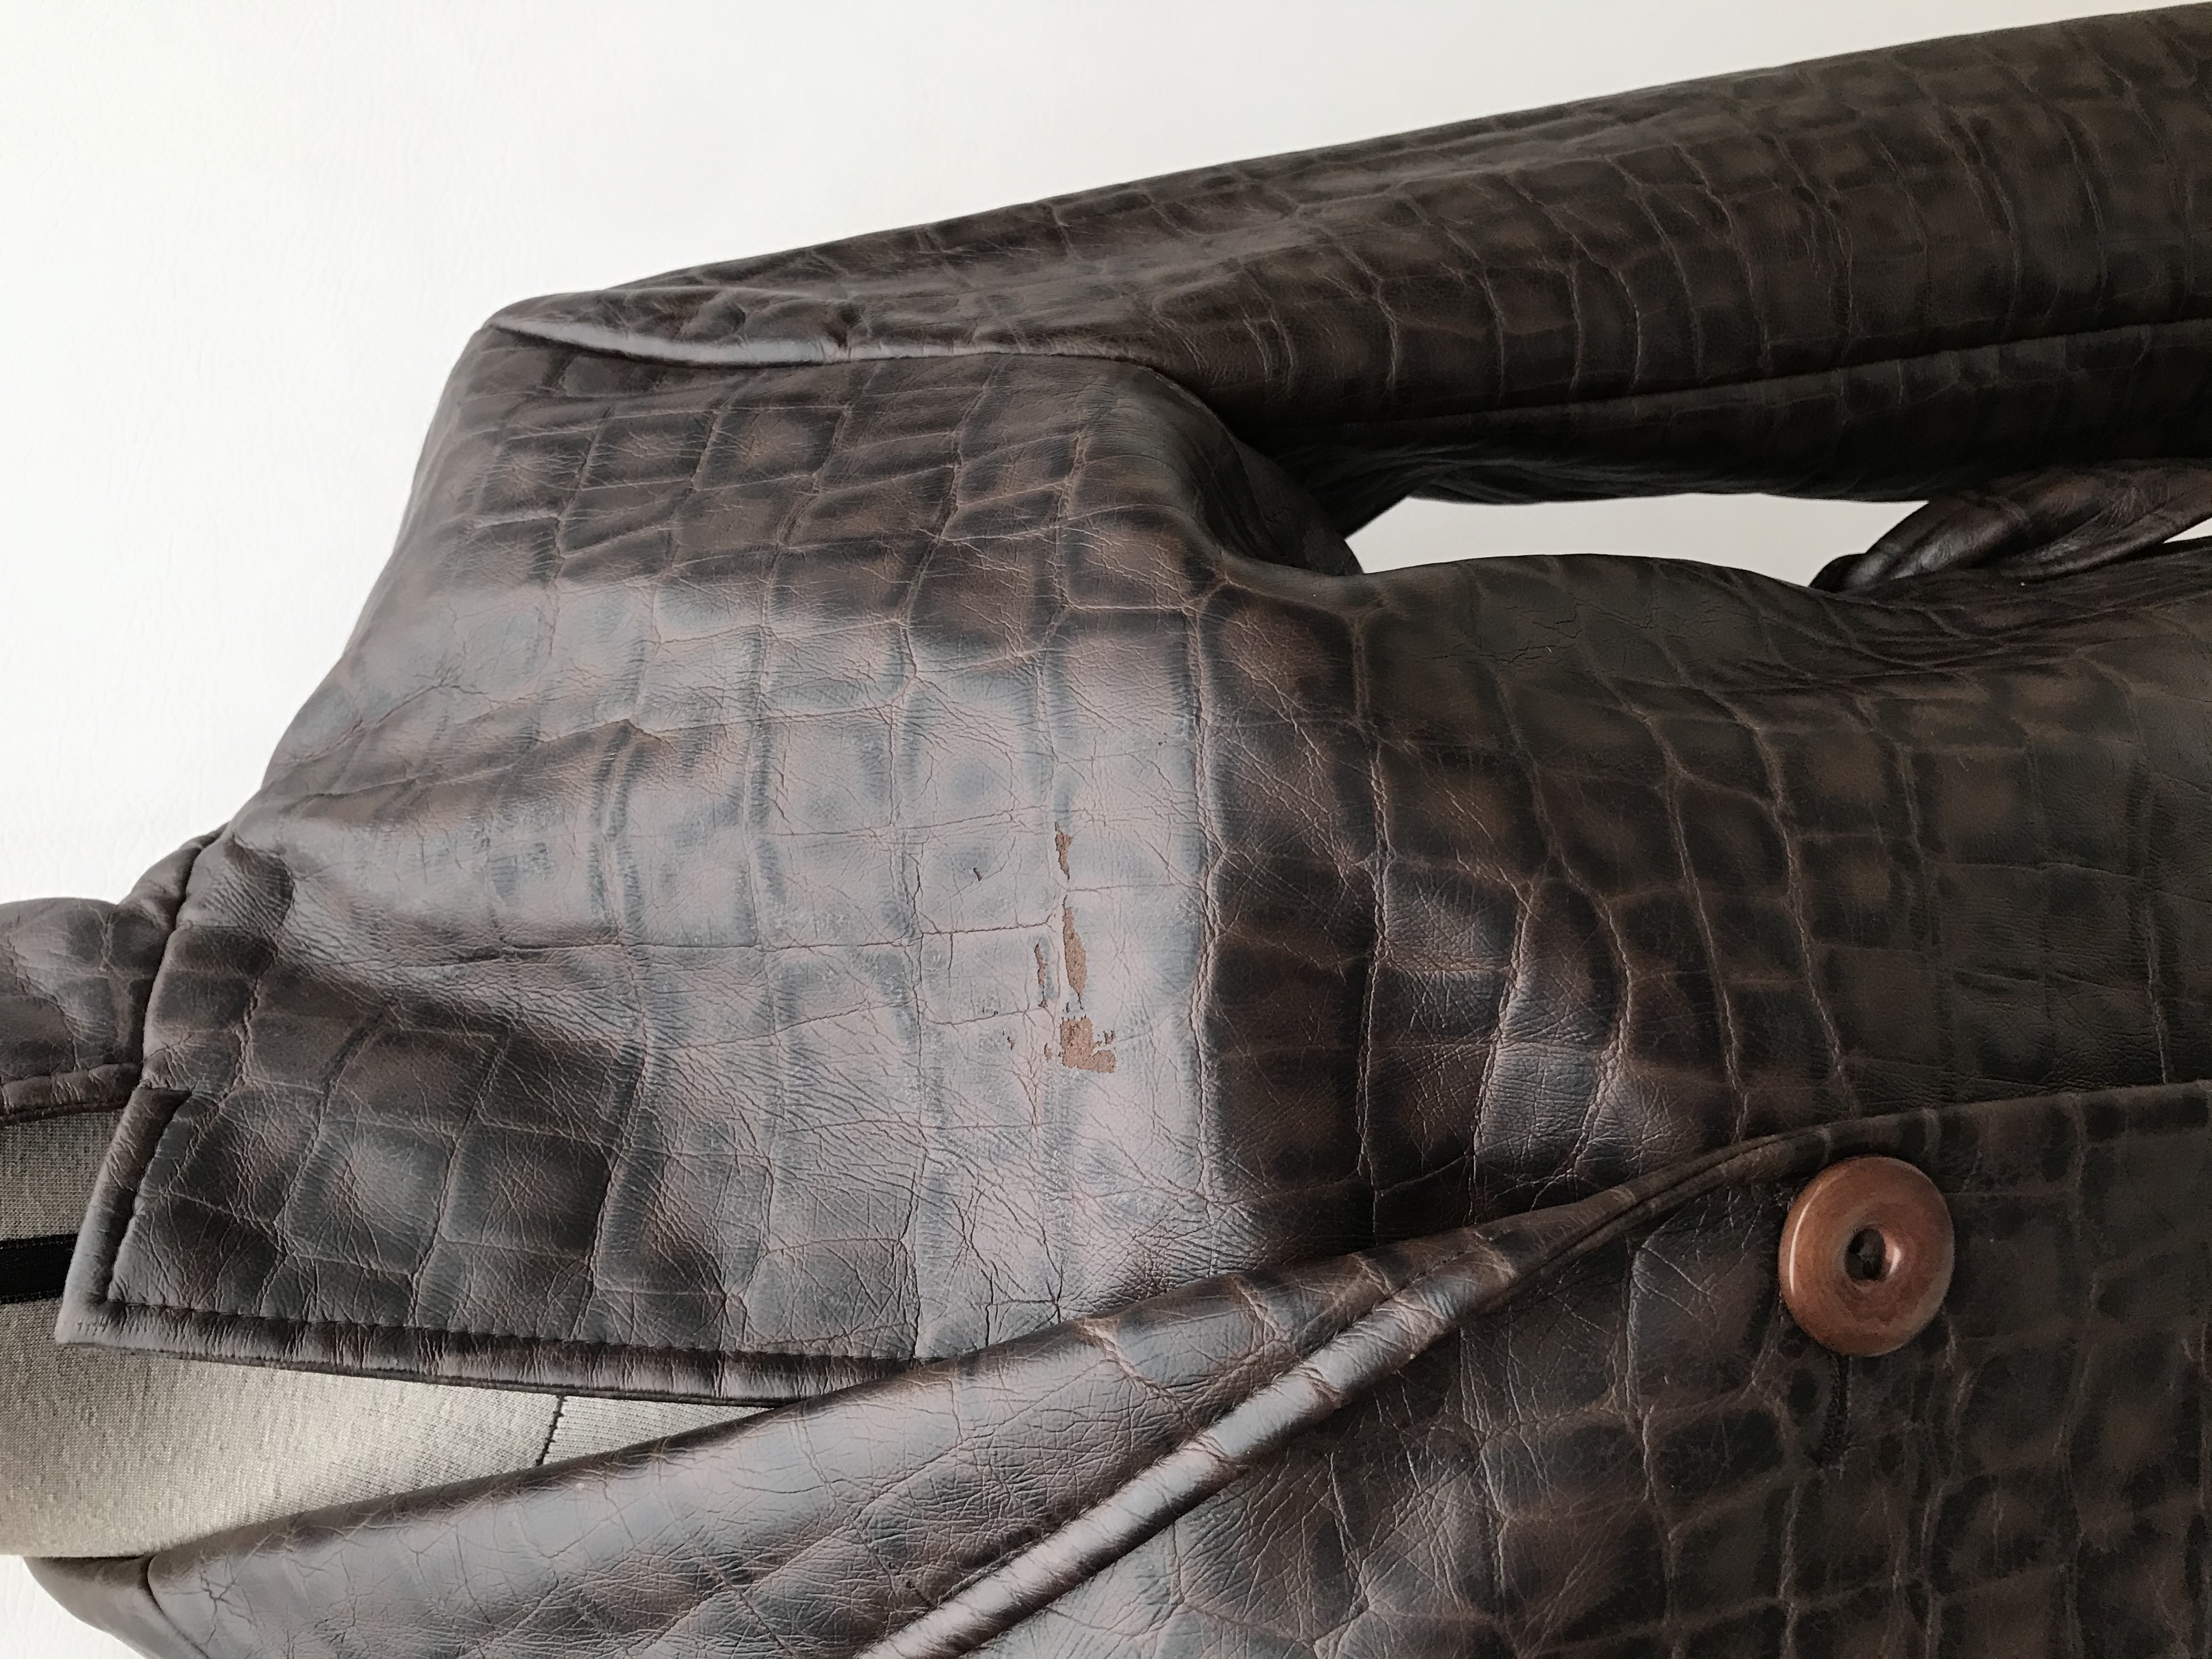 Abrigo Zara de cuerina textura reptil marrón y negro, forrado, solapas, botones y cinturón, corte en A. Largo 90cm, Tiene un raspado debajo de la solapa izquierda. Precio original S/ 290. ¡Hermoso!